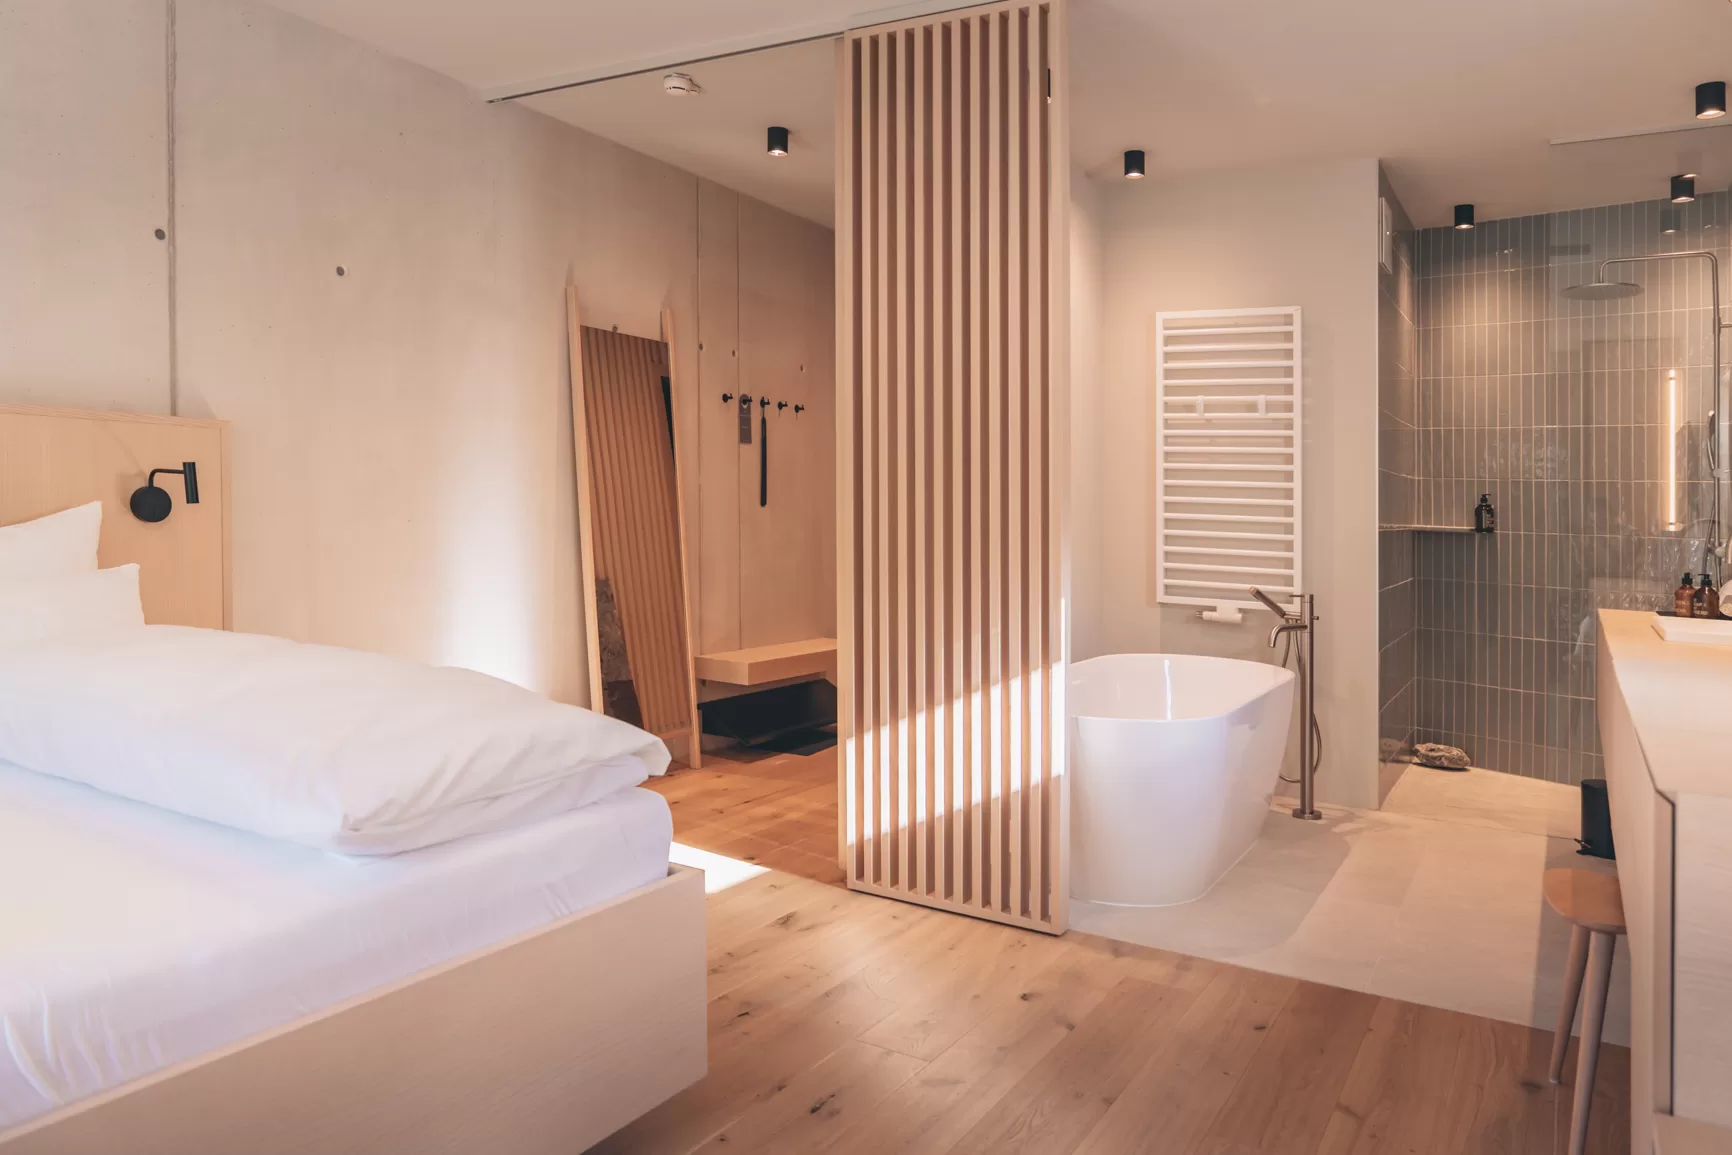 Zimmer Avantgardist, Design, Entspannung, Beton und Holz, Bergsommer, Badezimmer Design